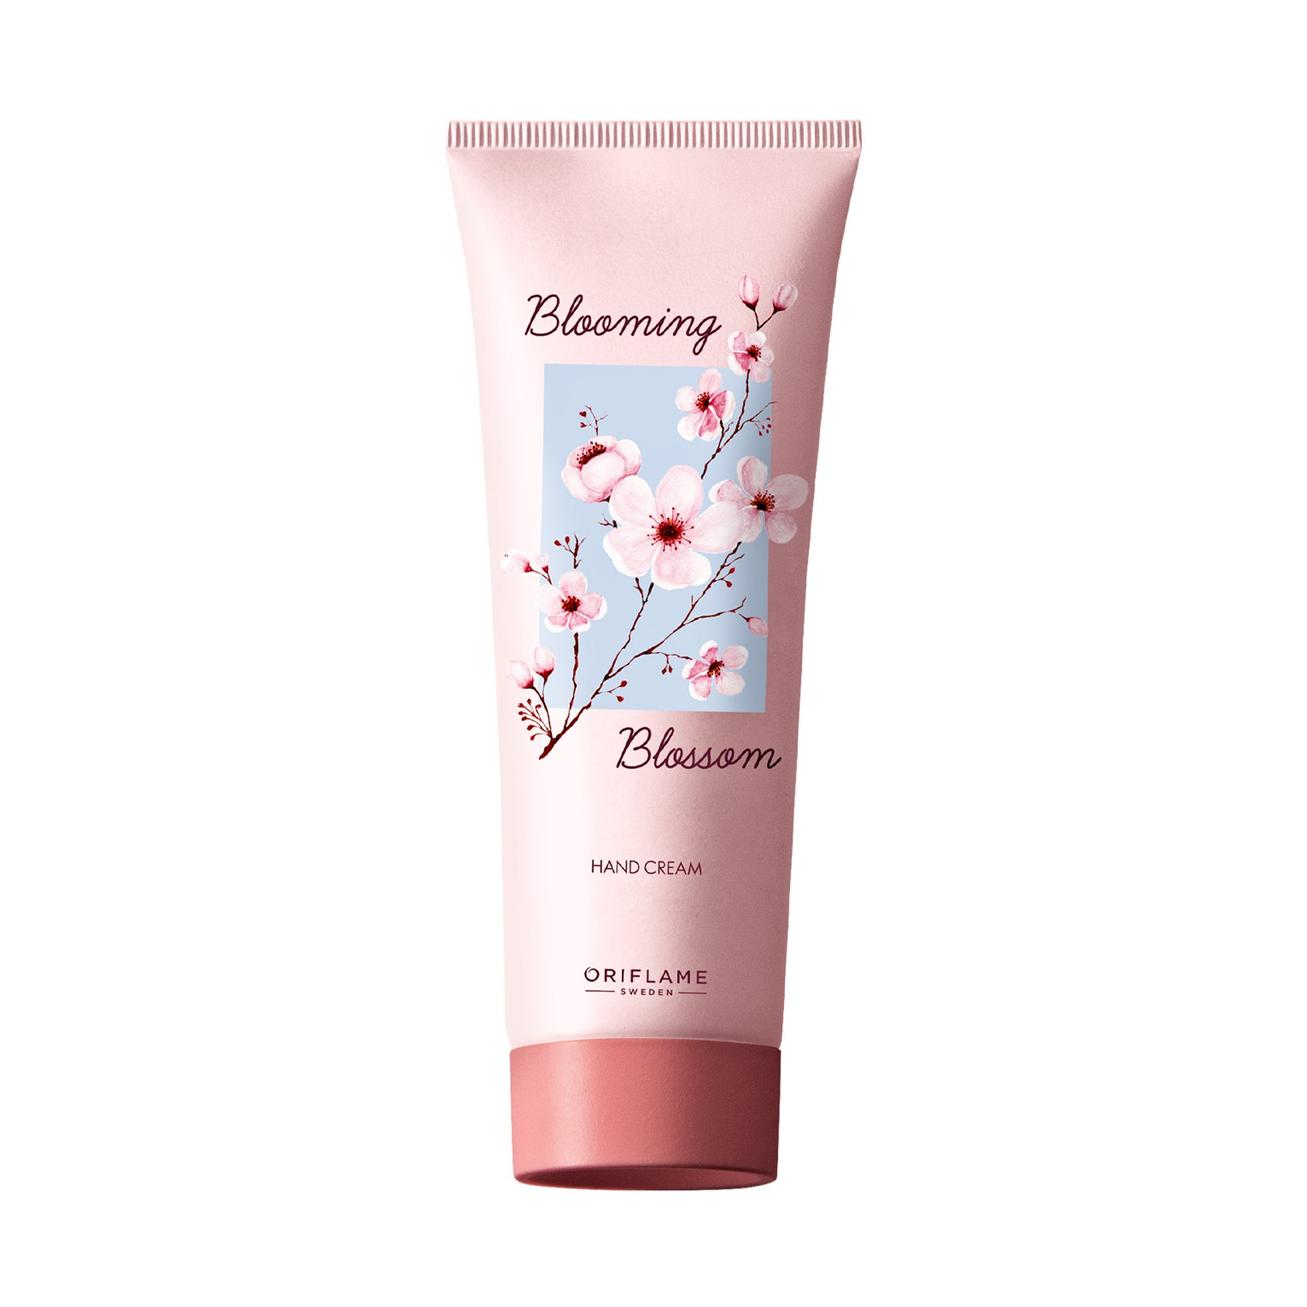 Blooming Blossom Hand Cream på tilbud til 95 kr. hos Oriflame